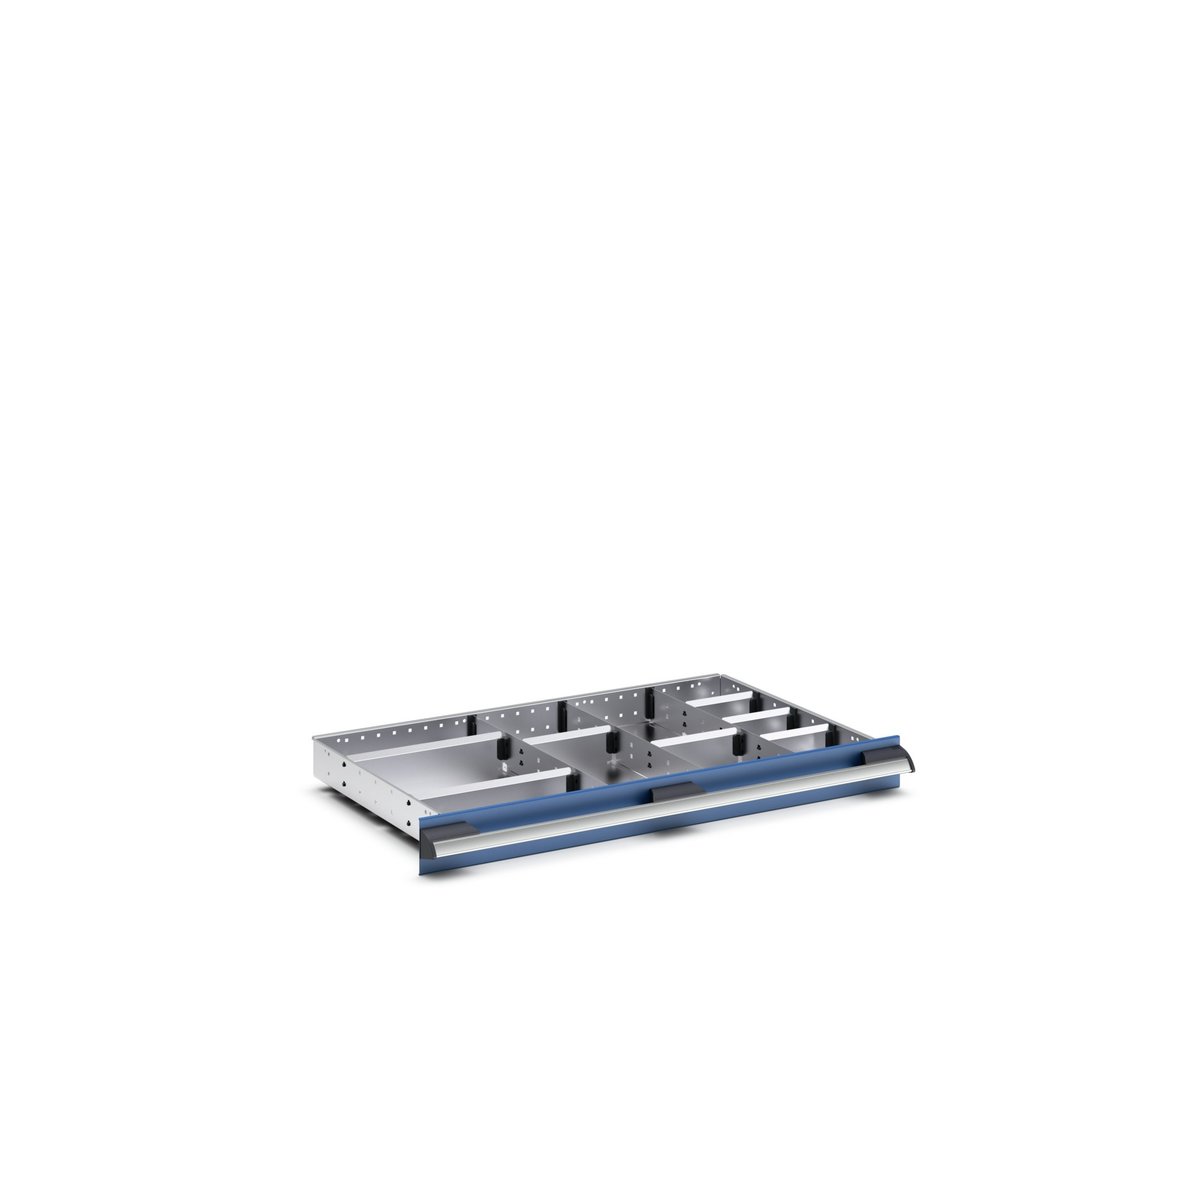 43020652.51 - cubio adjustable divider kit